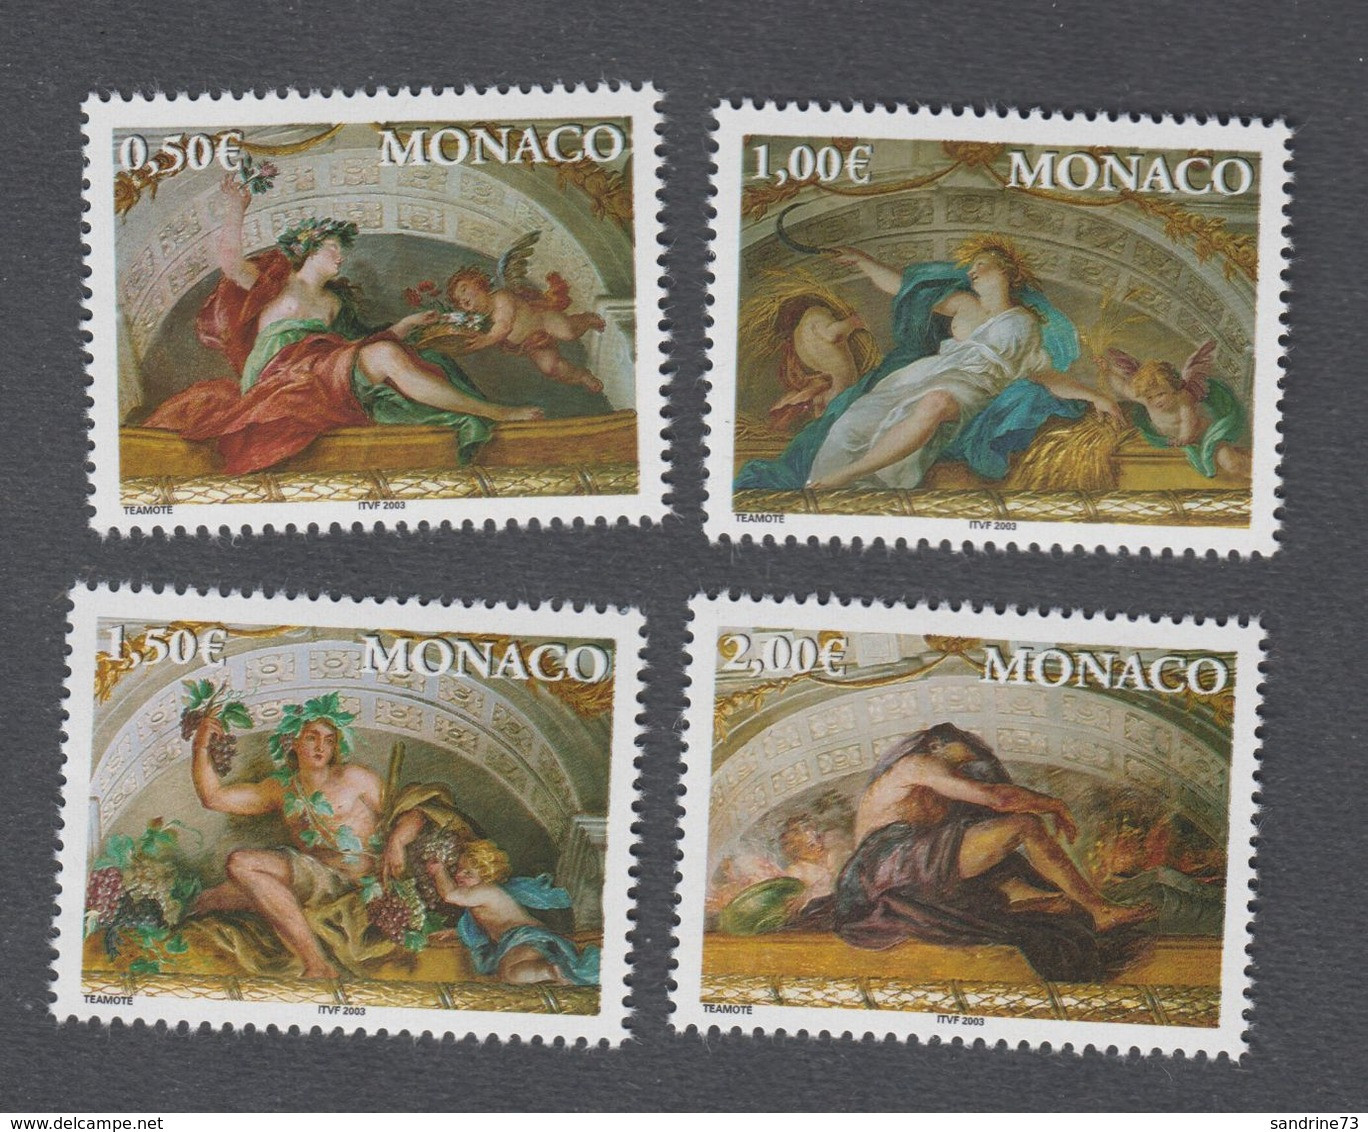 Monaco - Timbres Neufs ** - N°2373 à 2376 - Quatre Saisons - 2002 - Unused Stamps